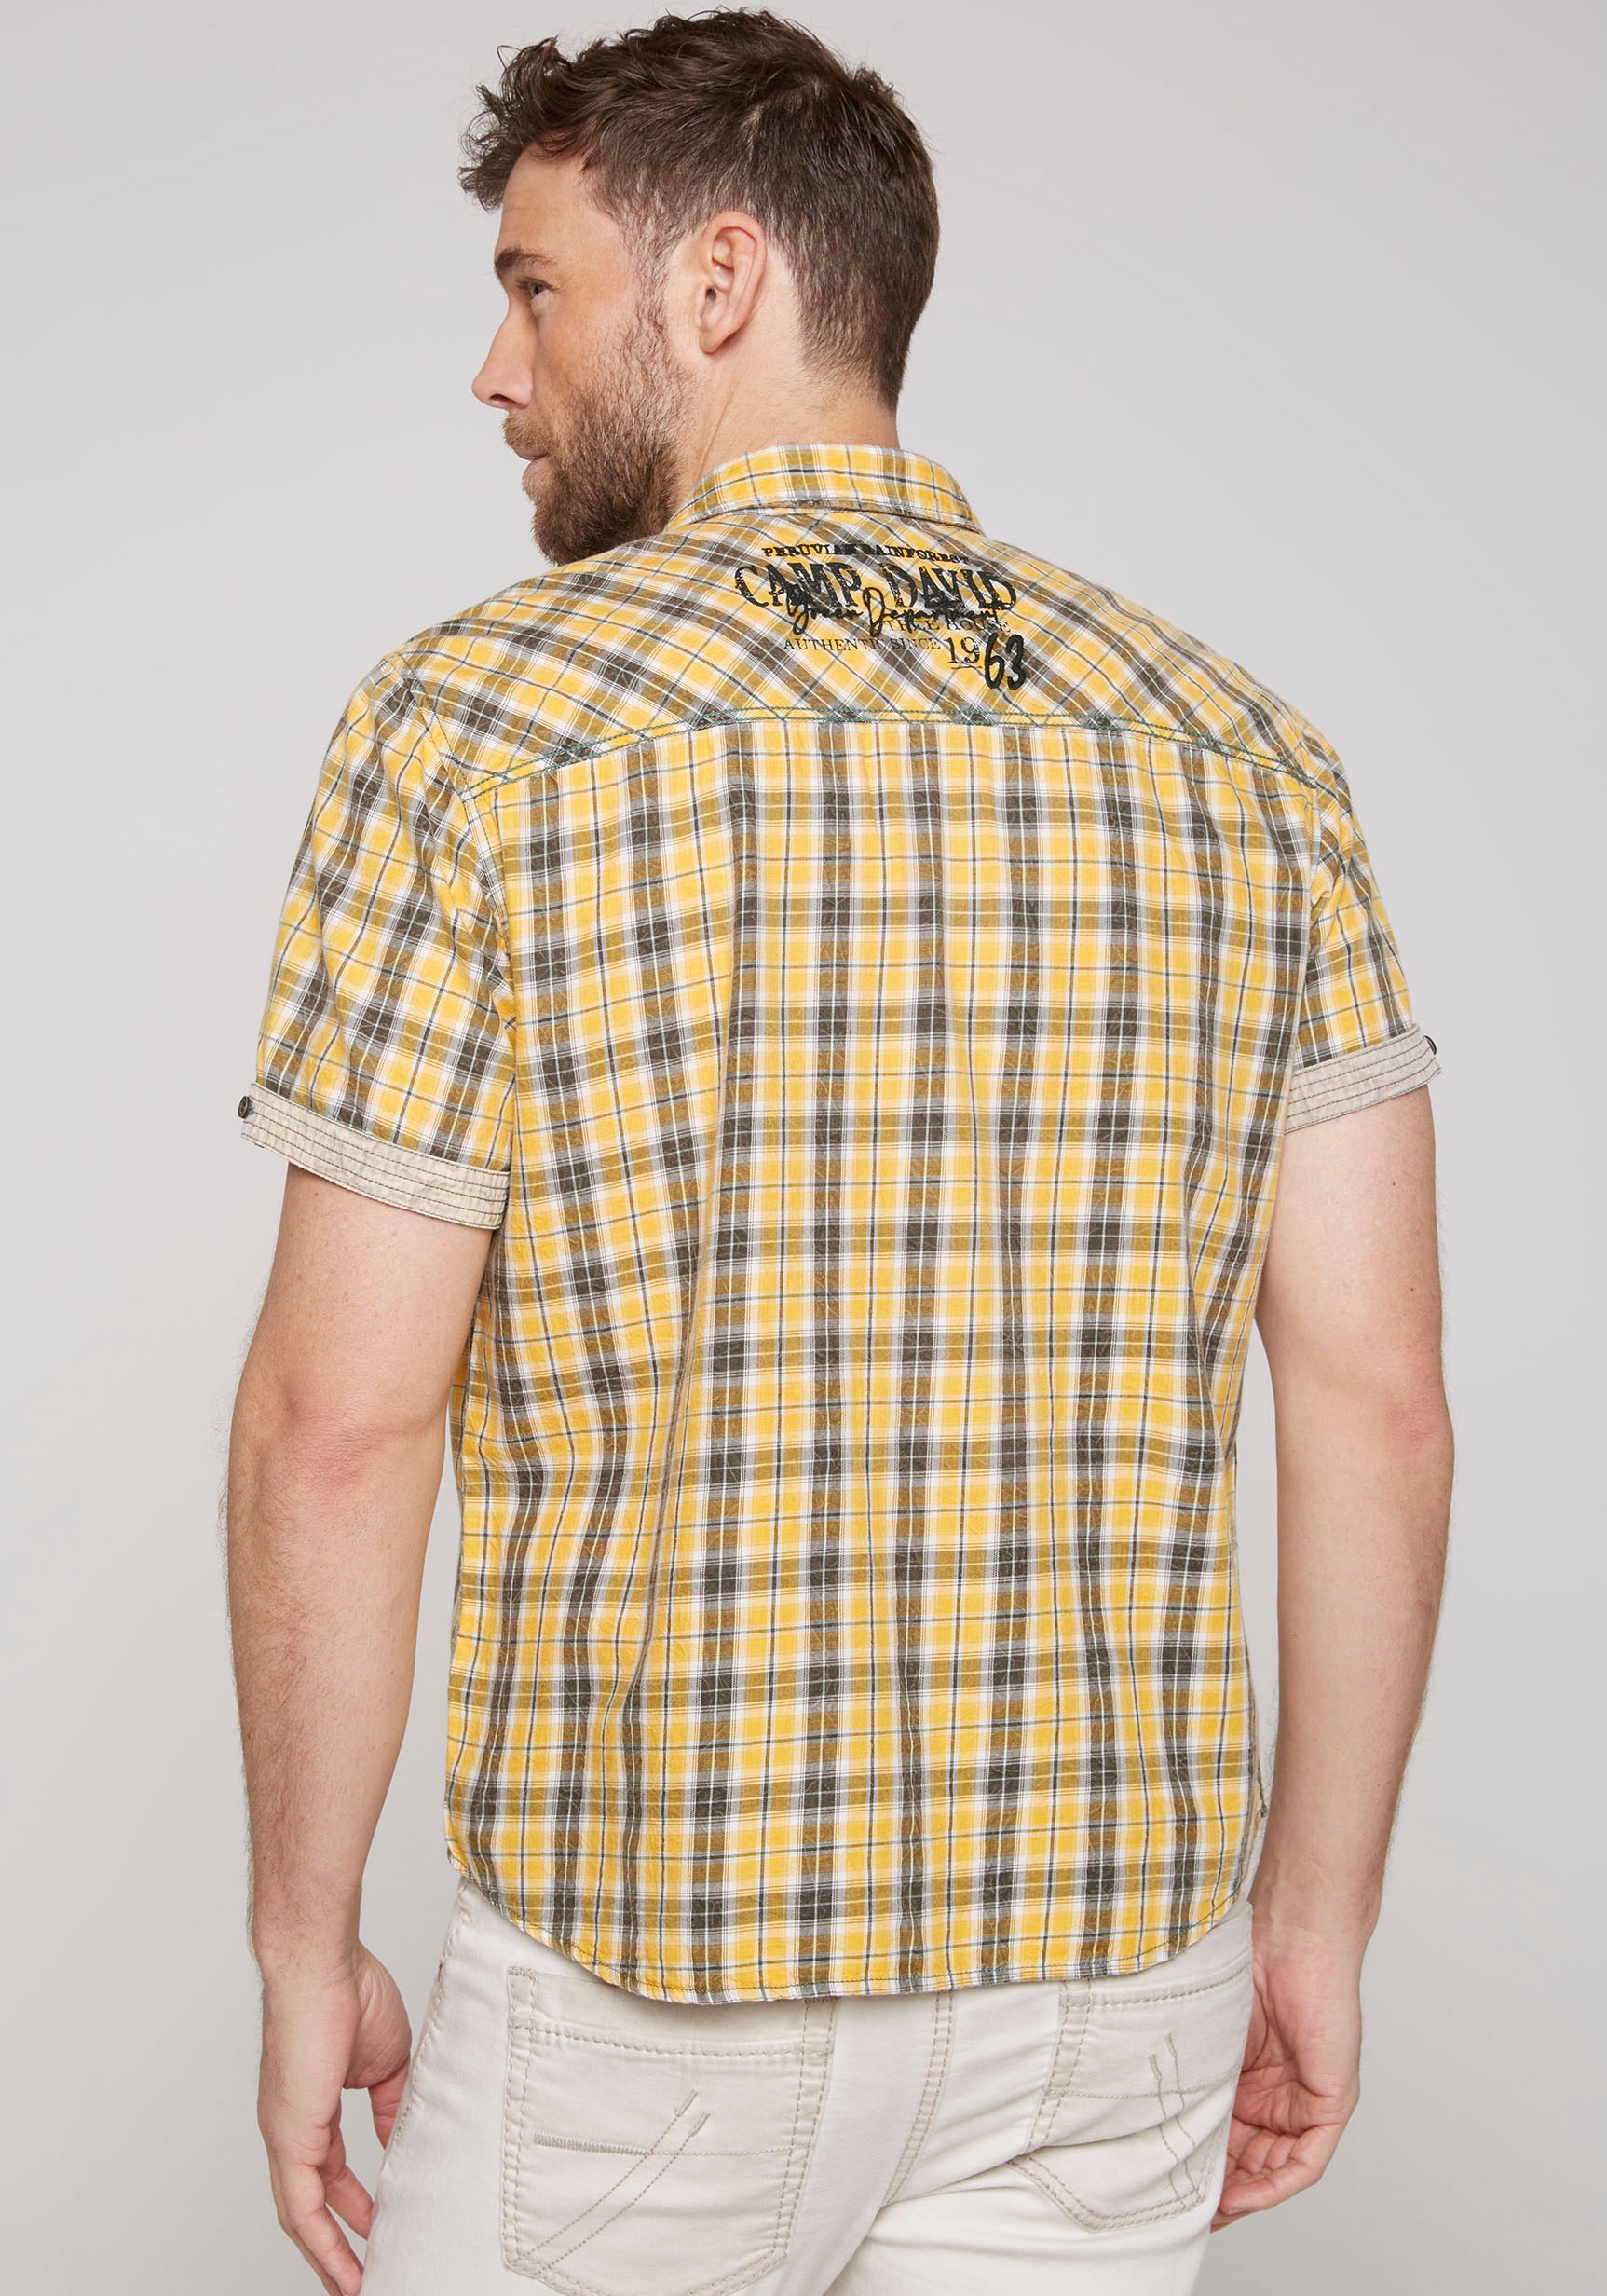 CAMP DAVID Kurzarmhemd, mit kleinem Artwork auf dem Rücken online kaufen  bei OTTO